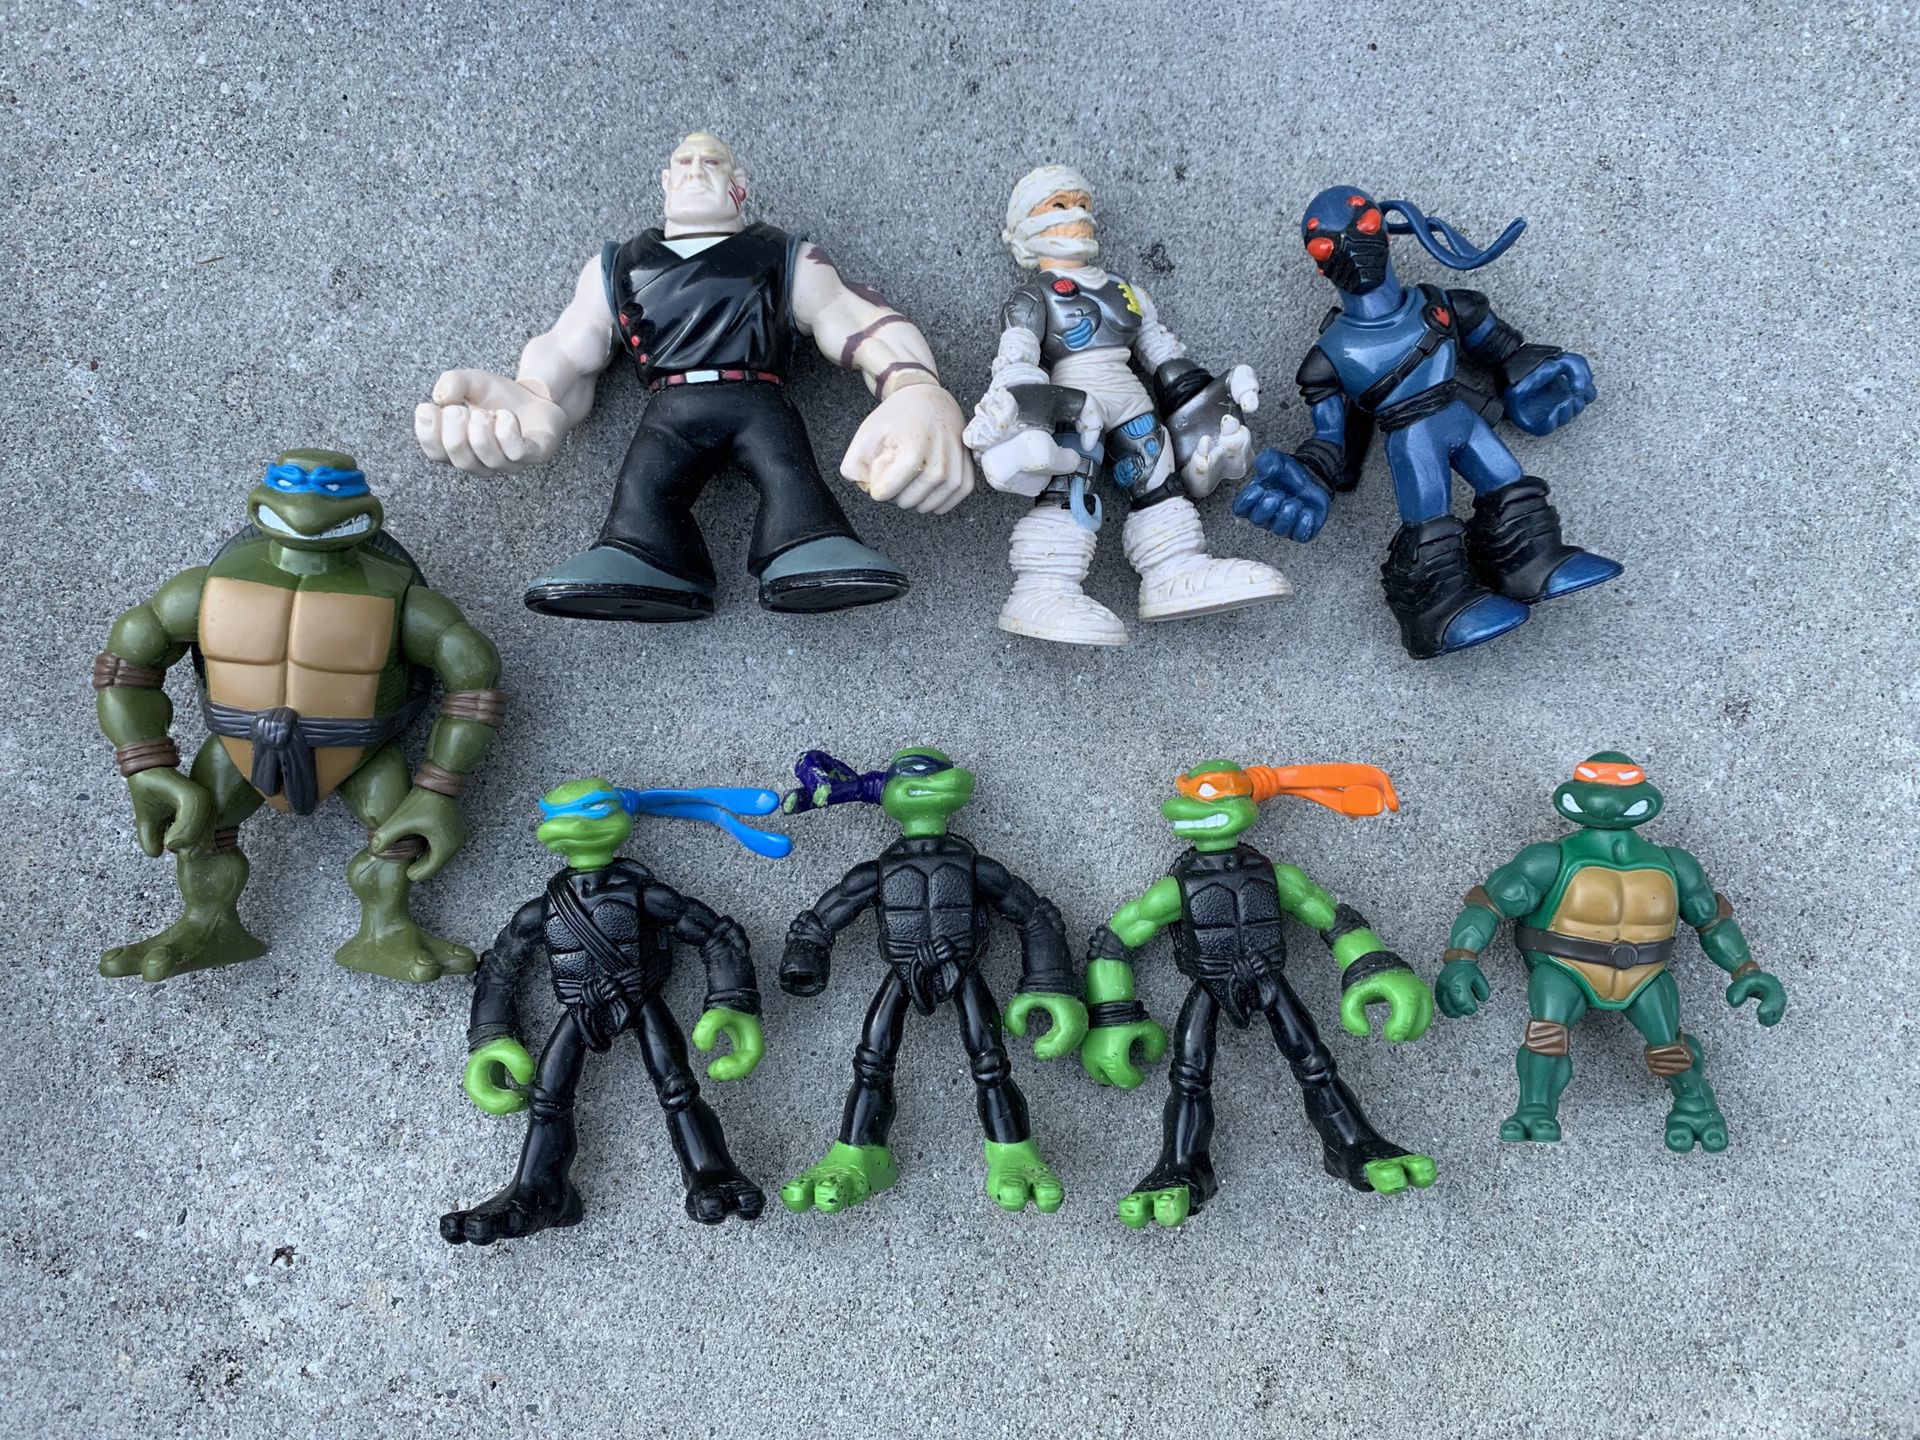 Teenage Mutant Ninja Turtles TMNT action figure toys